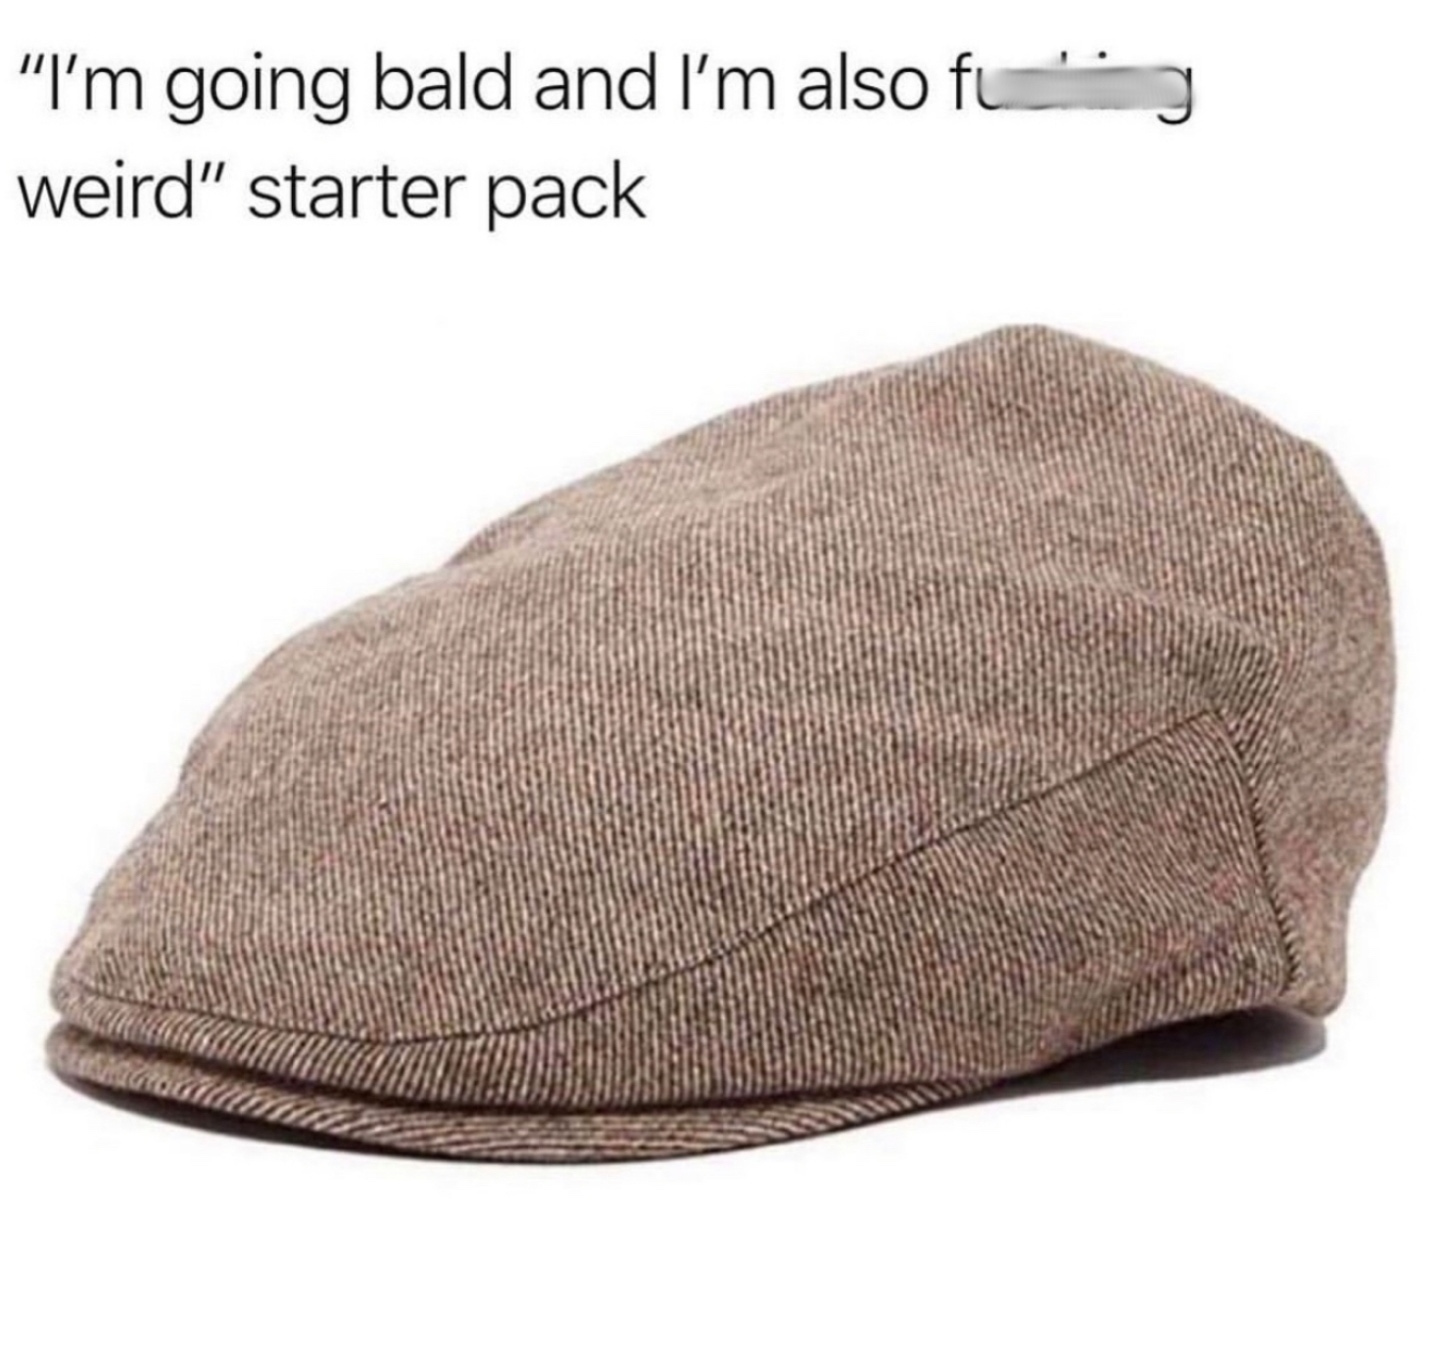 page boy cap - g "I'm going bald and I'm also fu_ weird" starter pack